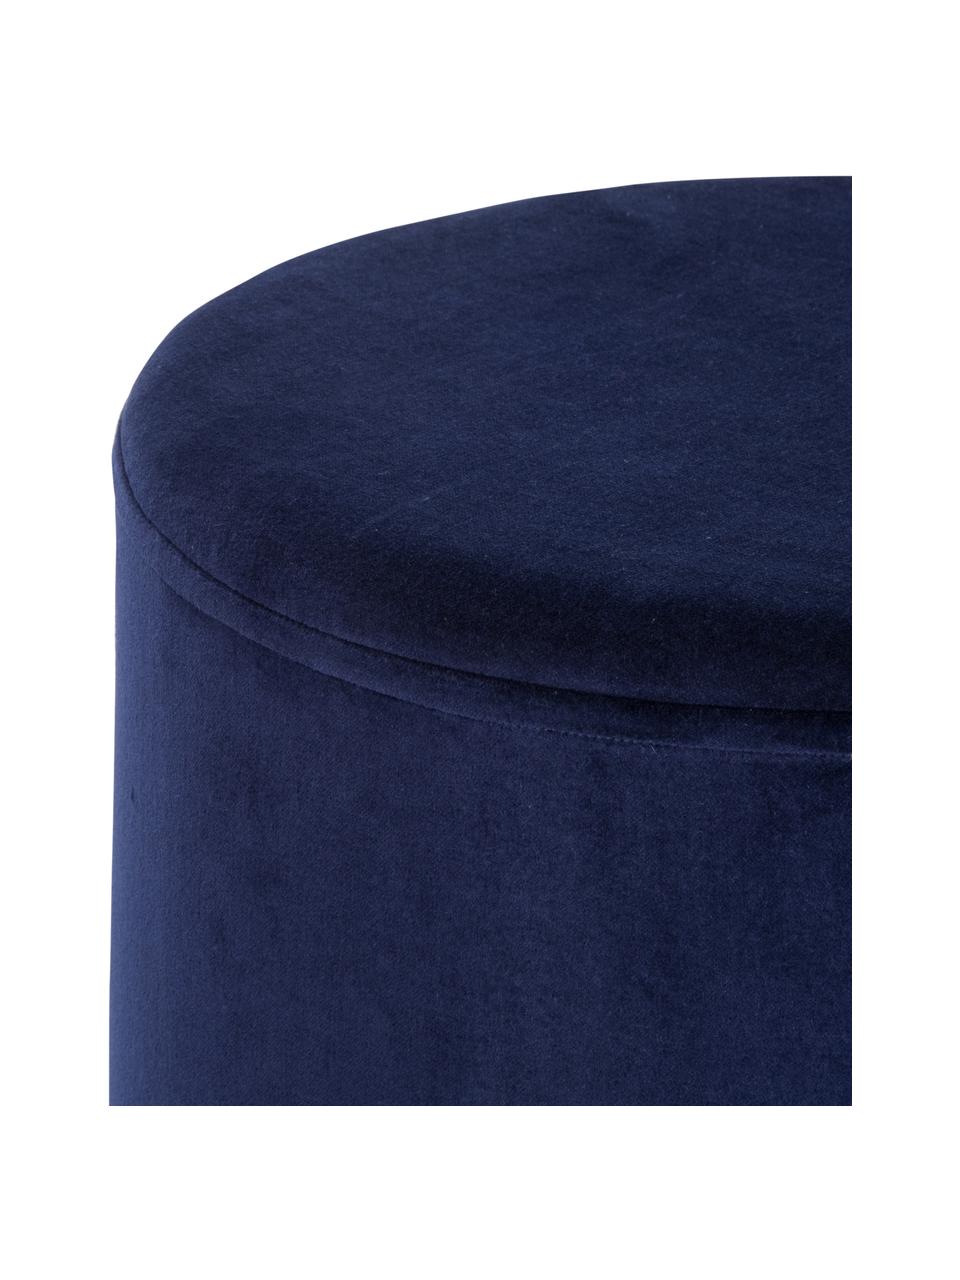 Pouf in velluto Haven, Rivestimento: velluto di cotone, Blu marino, dorato, Ø 38 x Alt. 45 cm